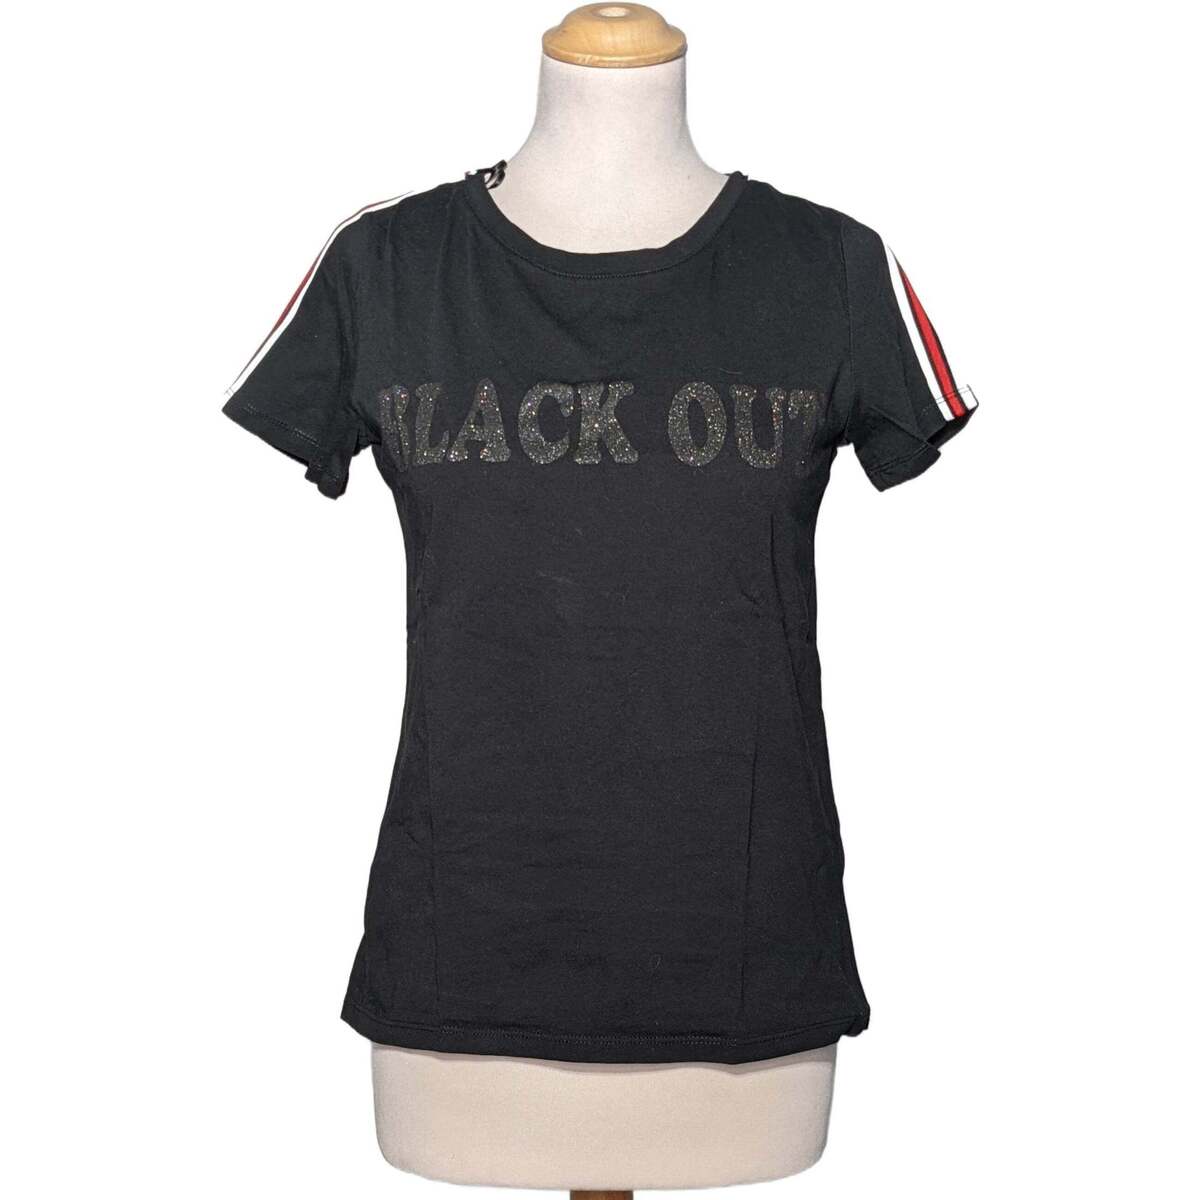 Vêtements Femme the marc jacobs kids new york short sleeve t shirt item top manches courtes  36 - T1 - S Noir Noir